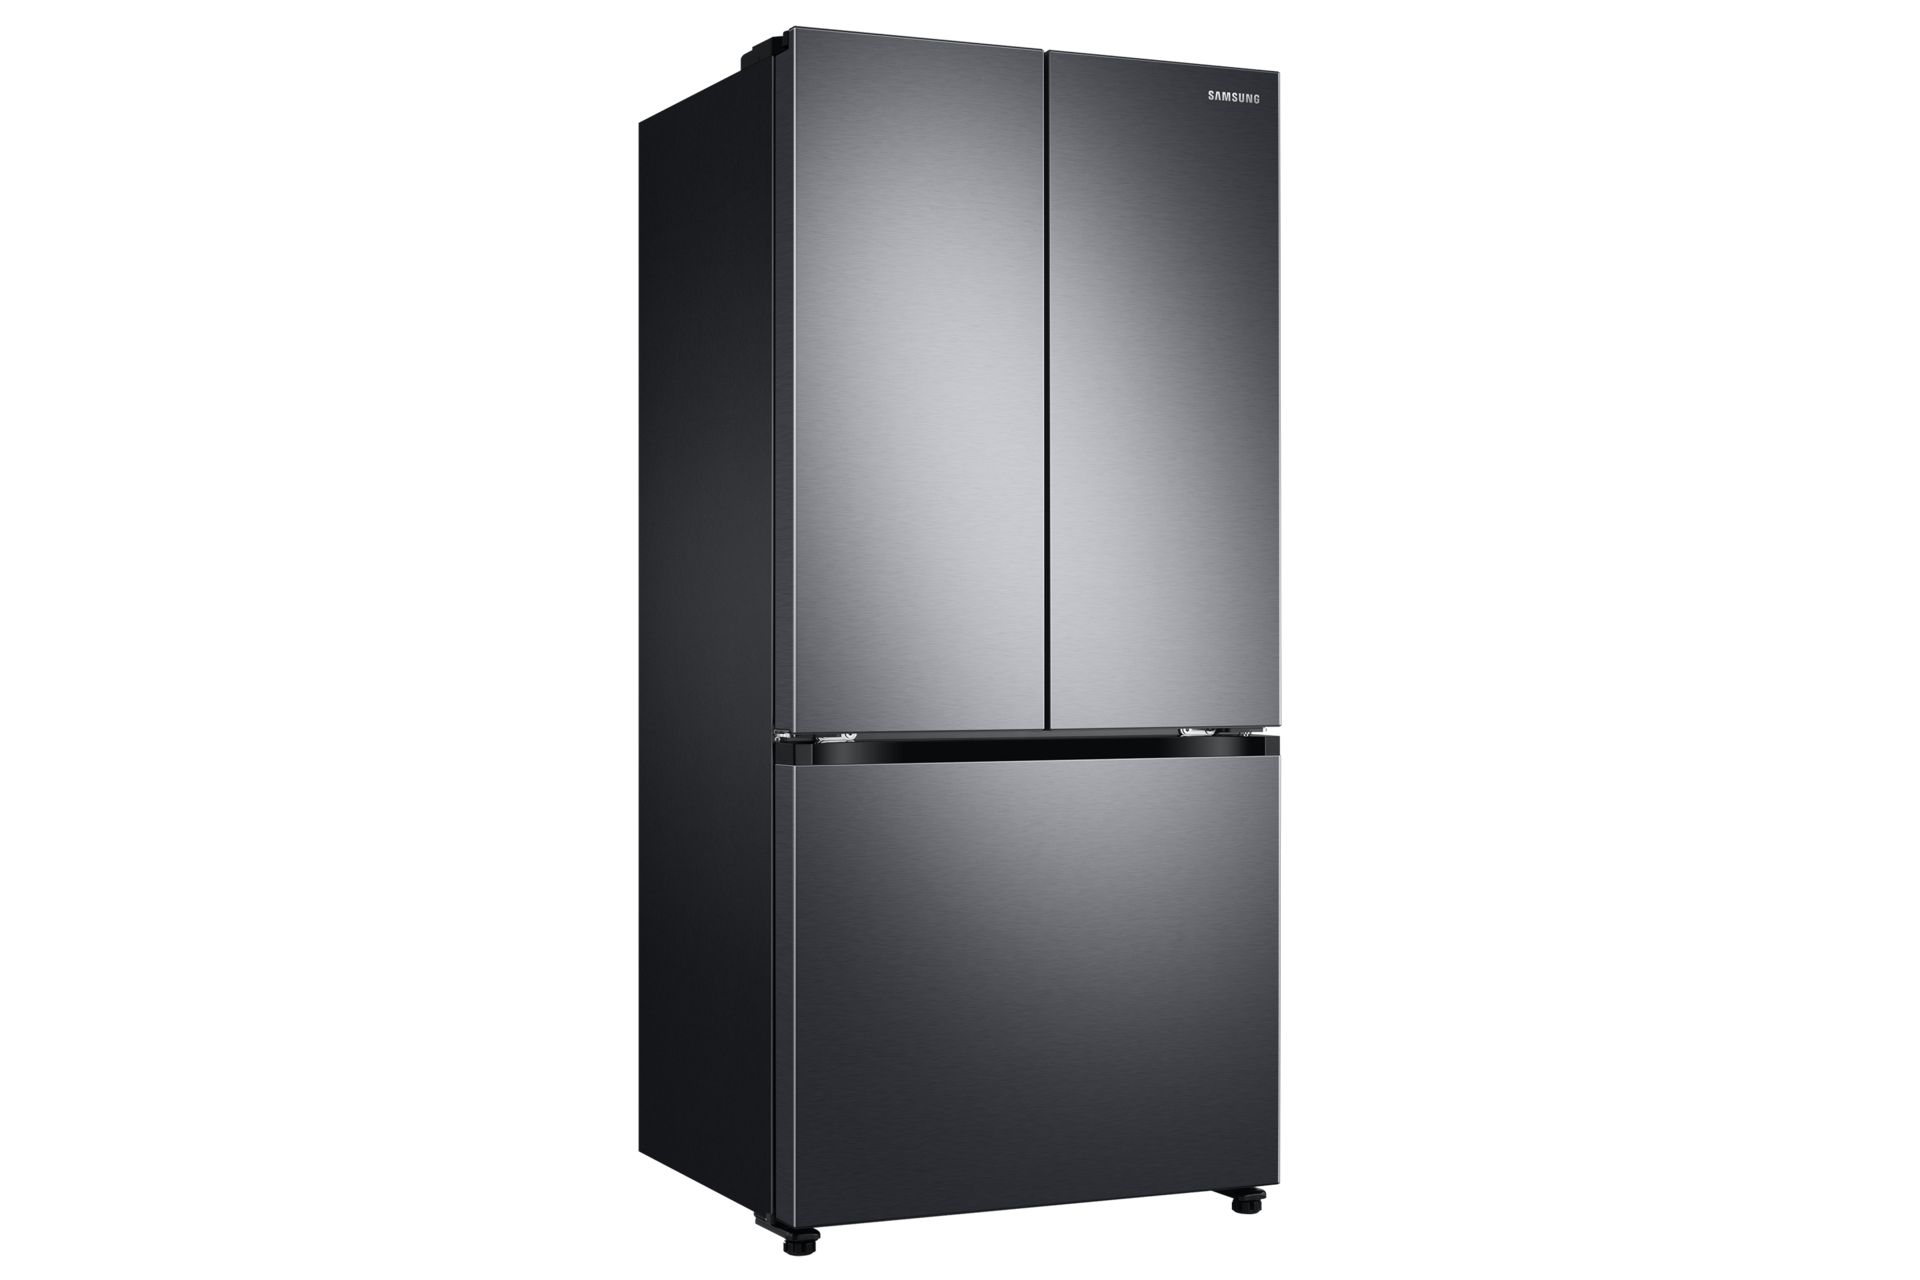 Découvrez les marques de réfrigérateurs les plus fiables